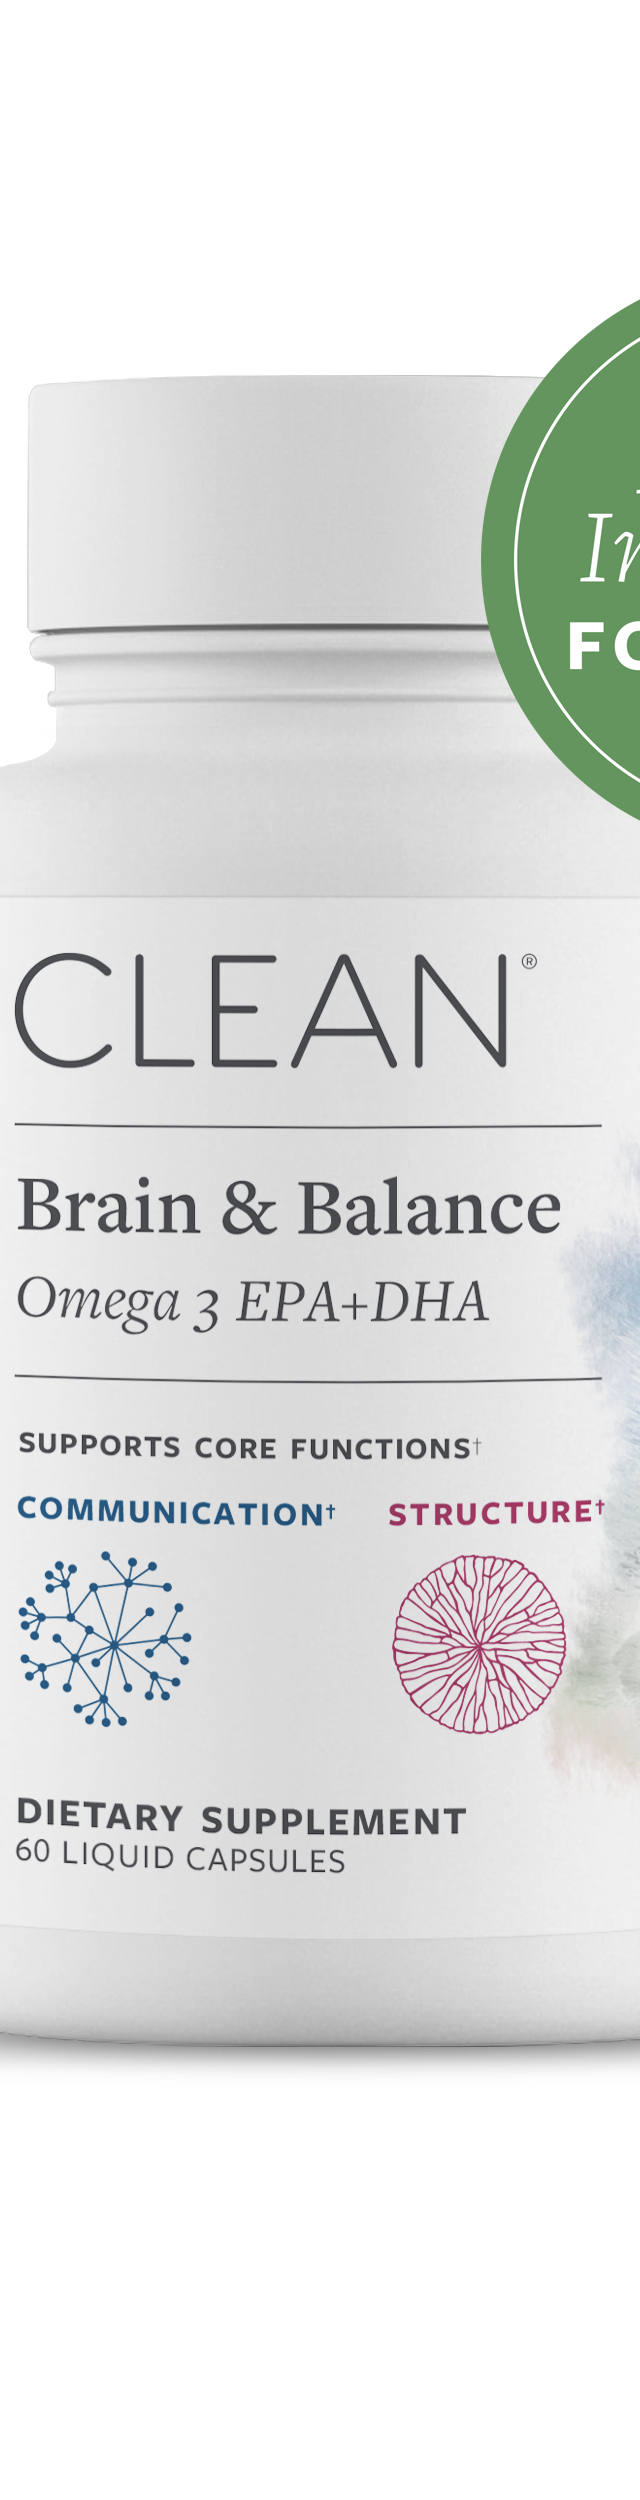 Brain & Balance